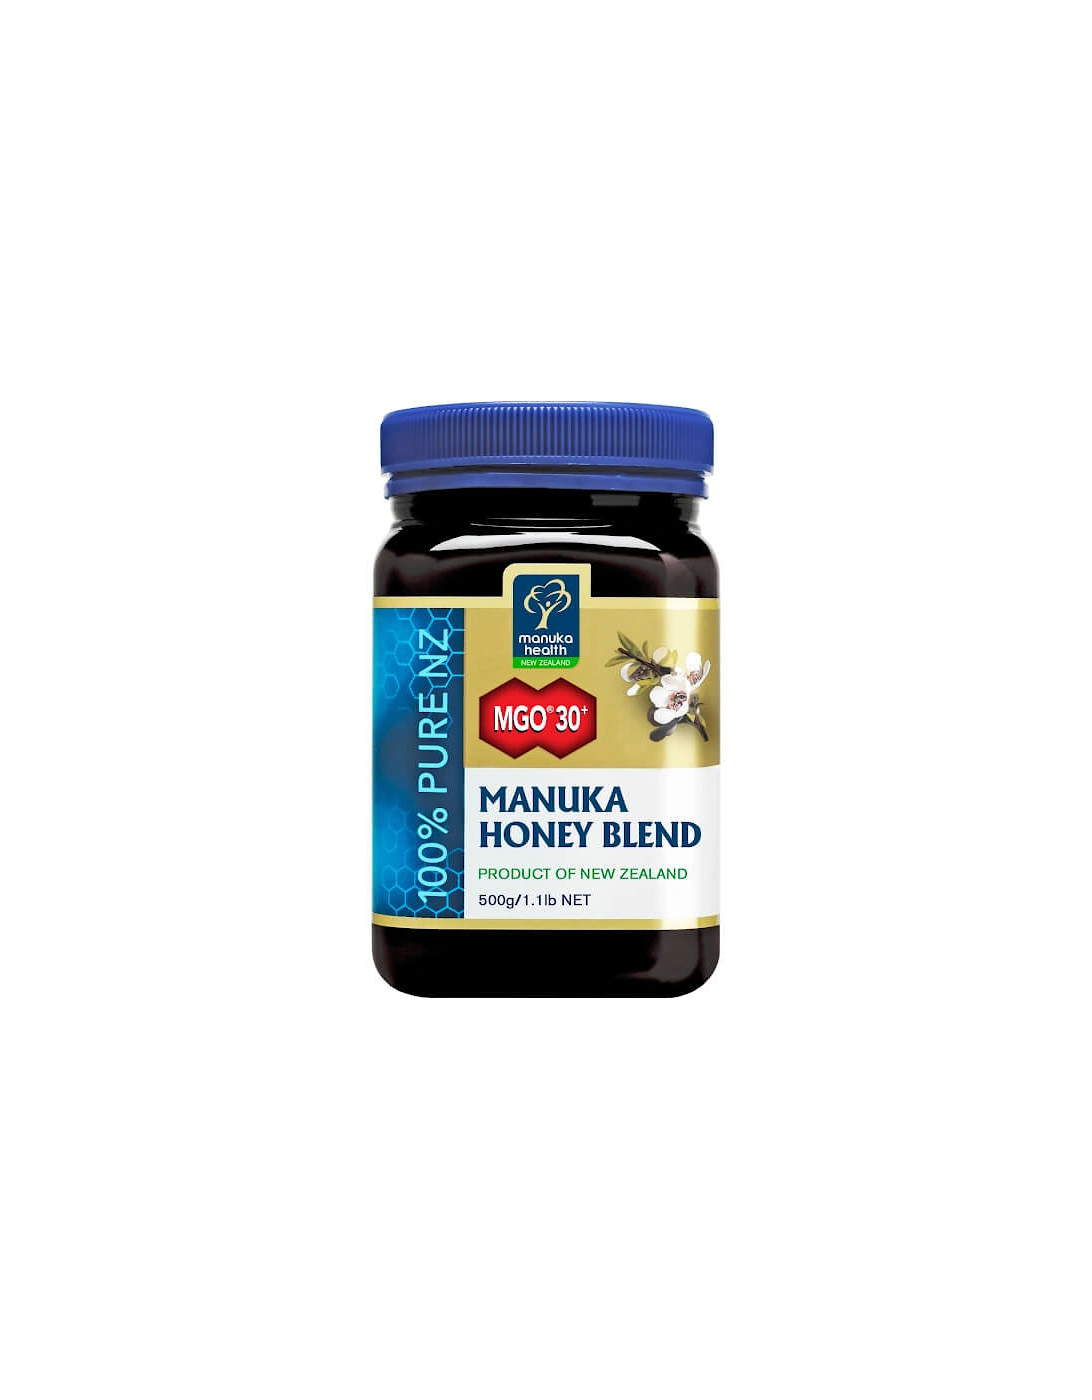 Health MGO 30+ Honey Blend Family Jar 1kg